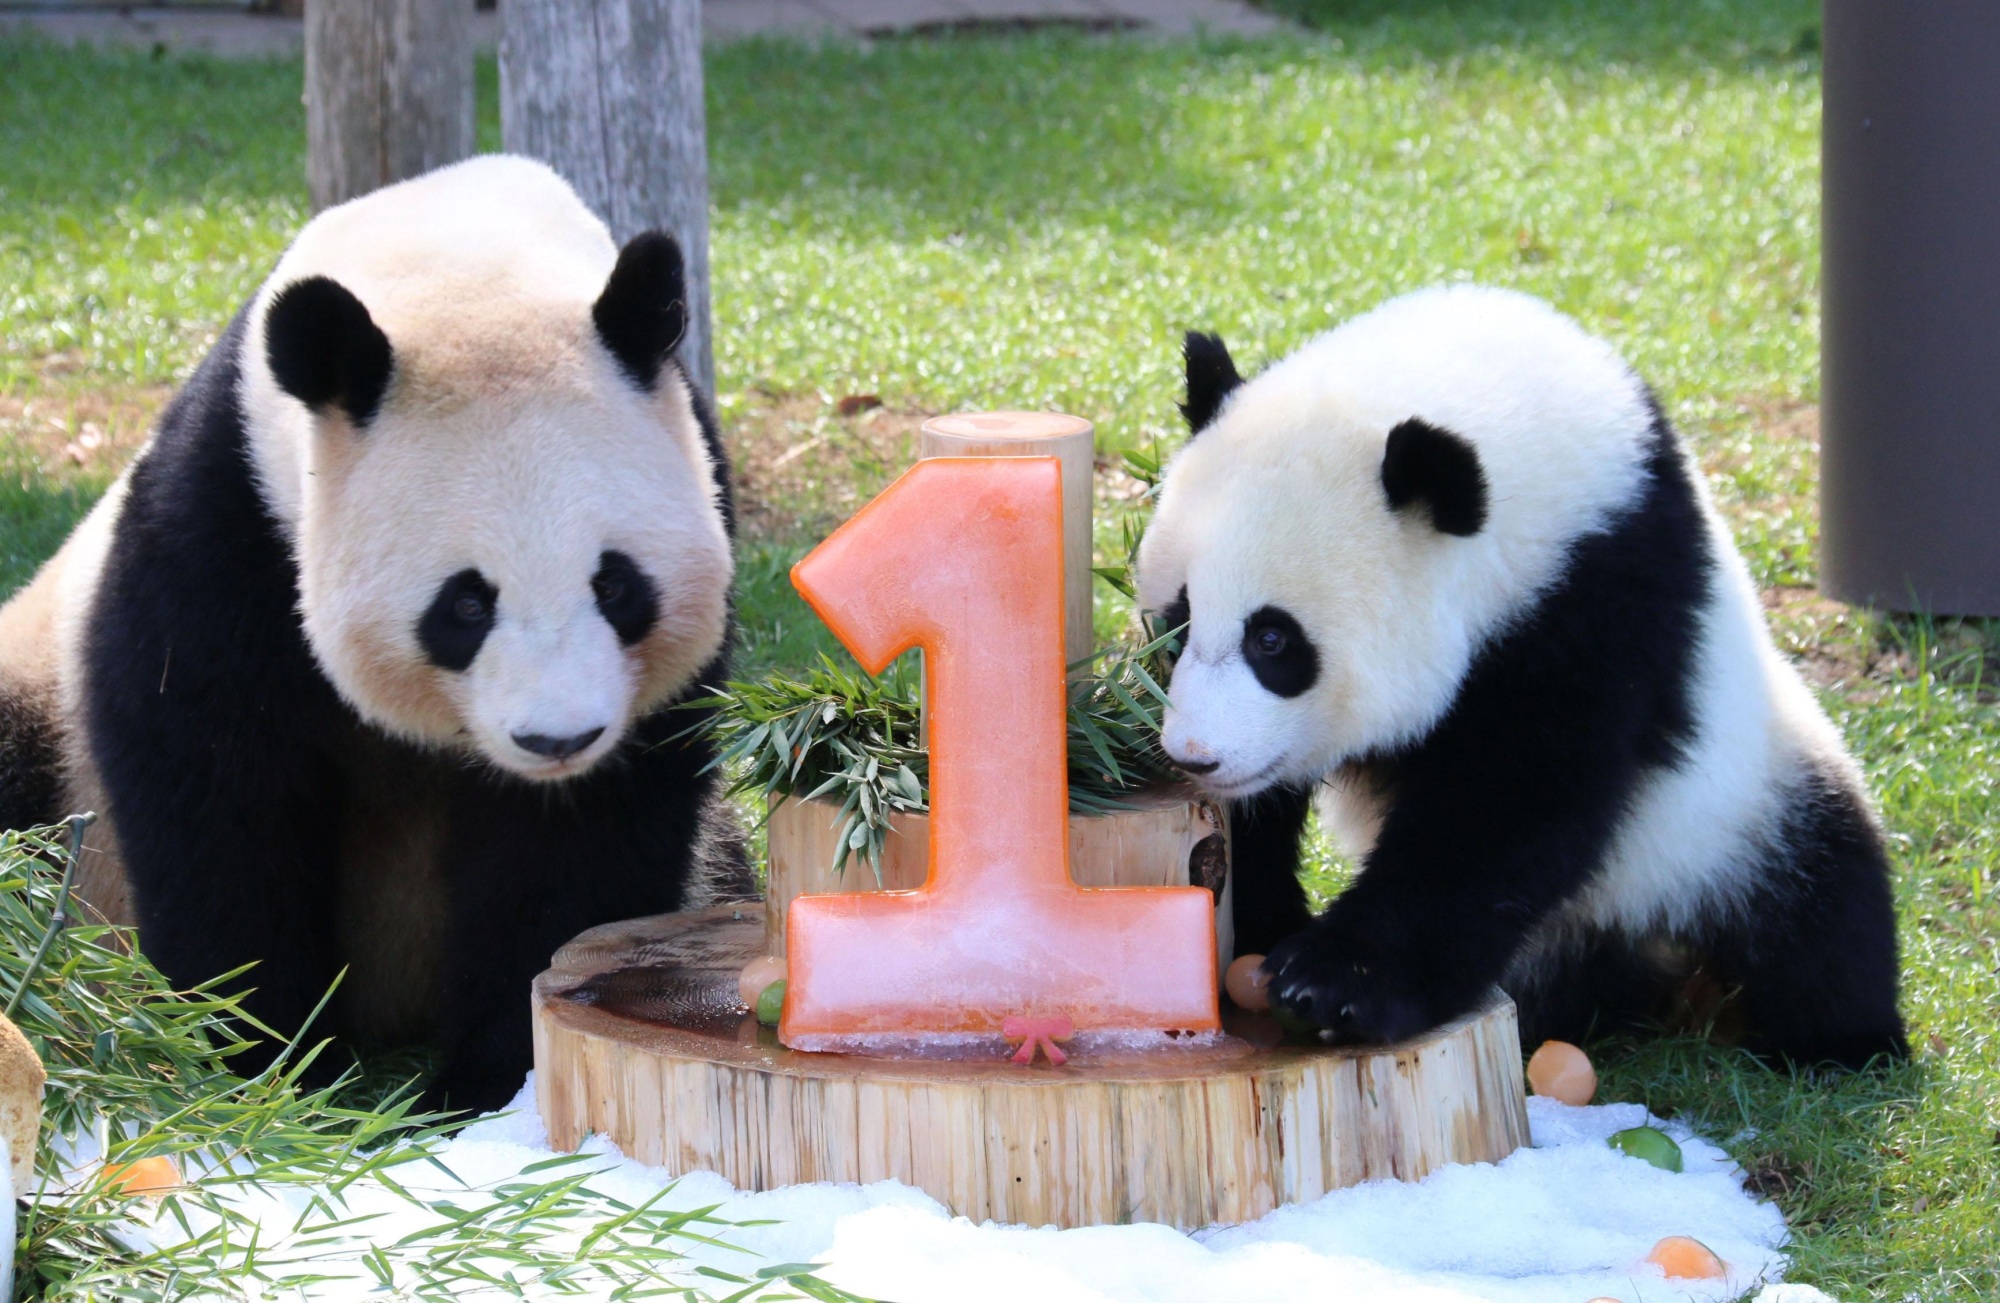 Wakayama zoo celebrates baby panda Yuihin's first birthday | The ...